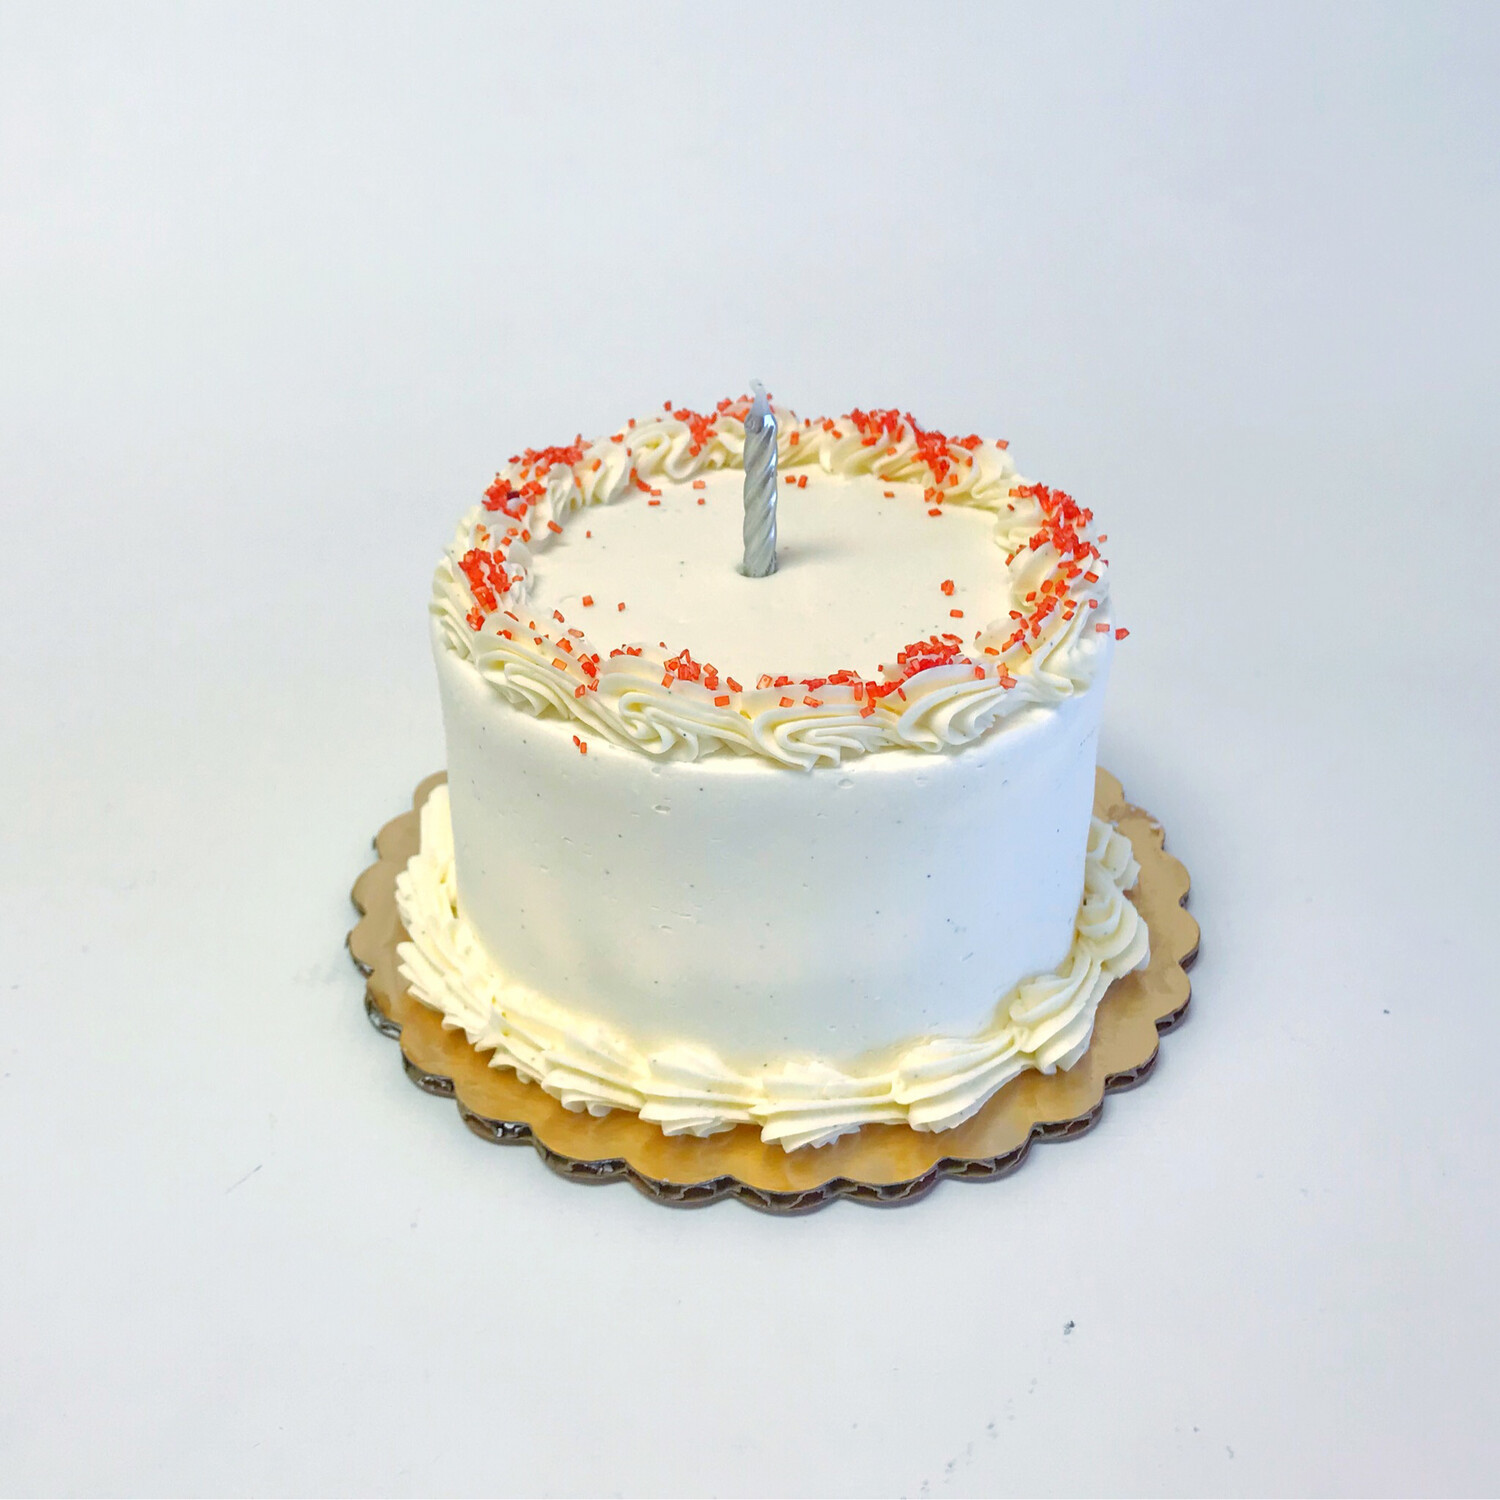 Red Velvet Mini Cake